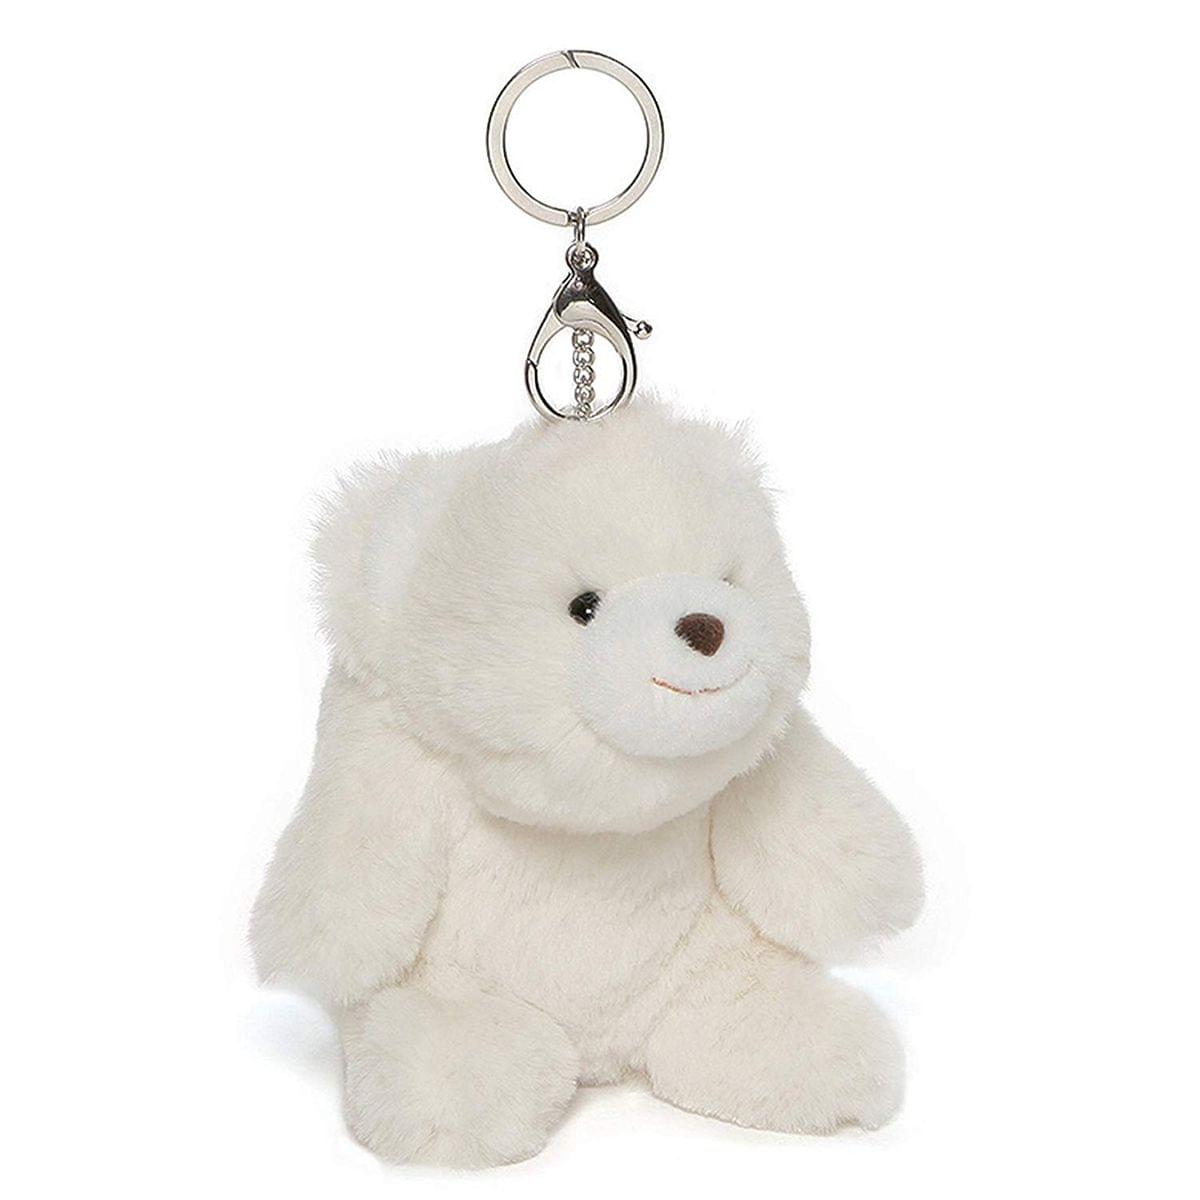 Snuffles the Teddy Bear 5-Inch Plush Keychain | White